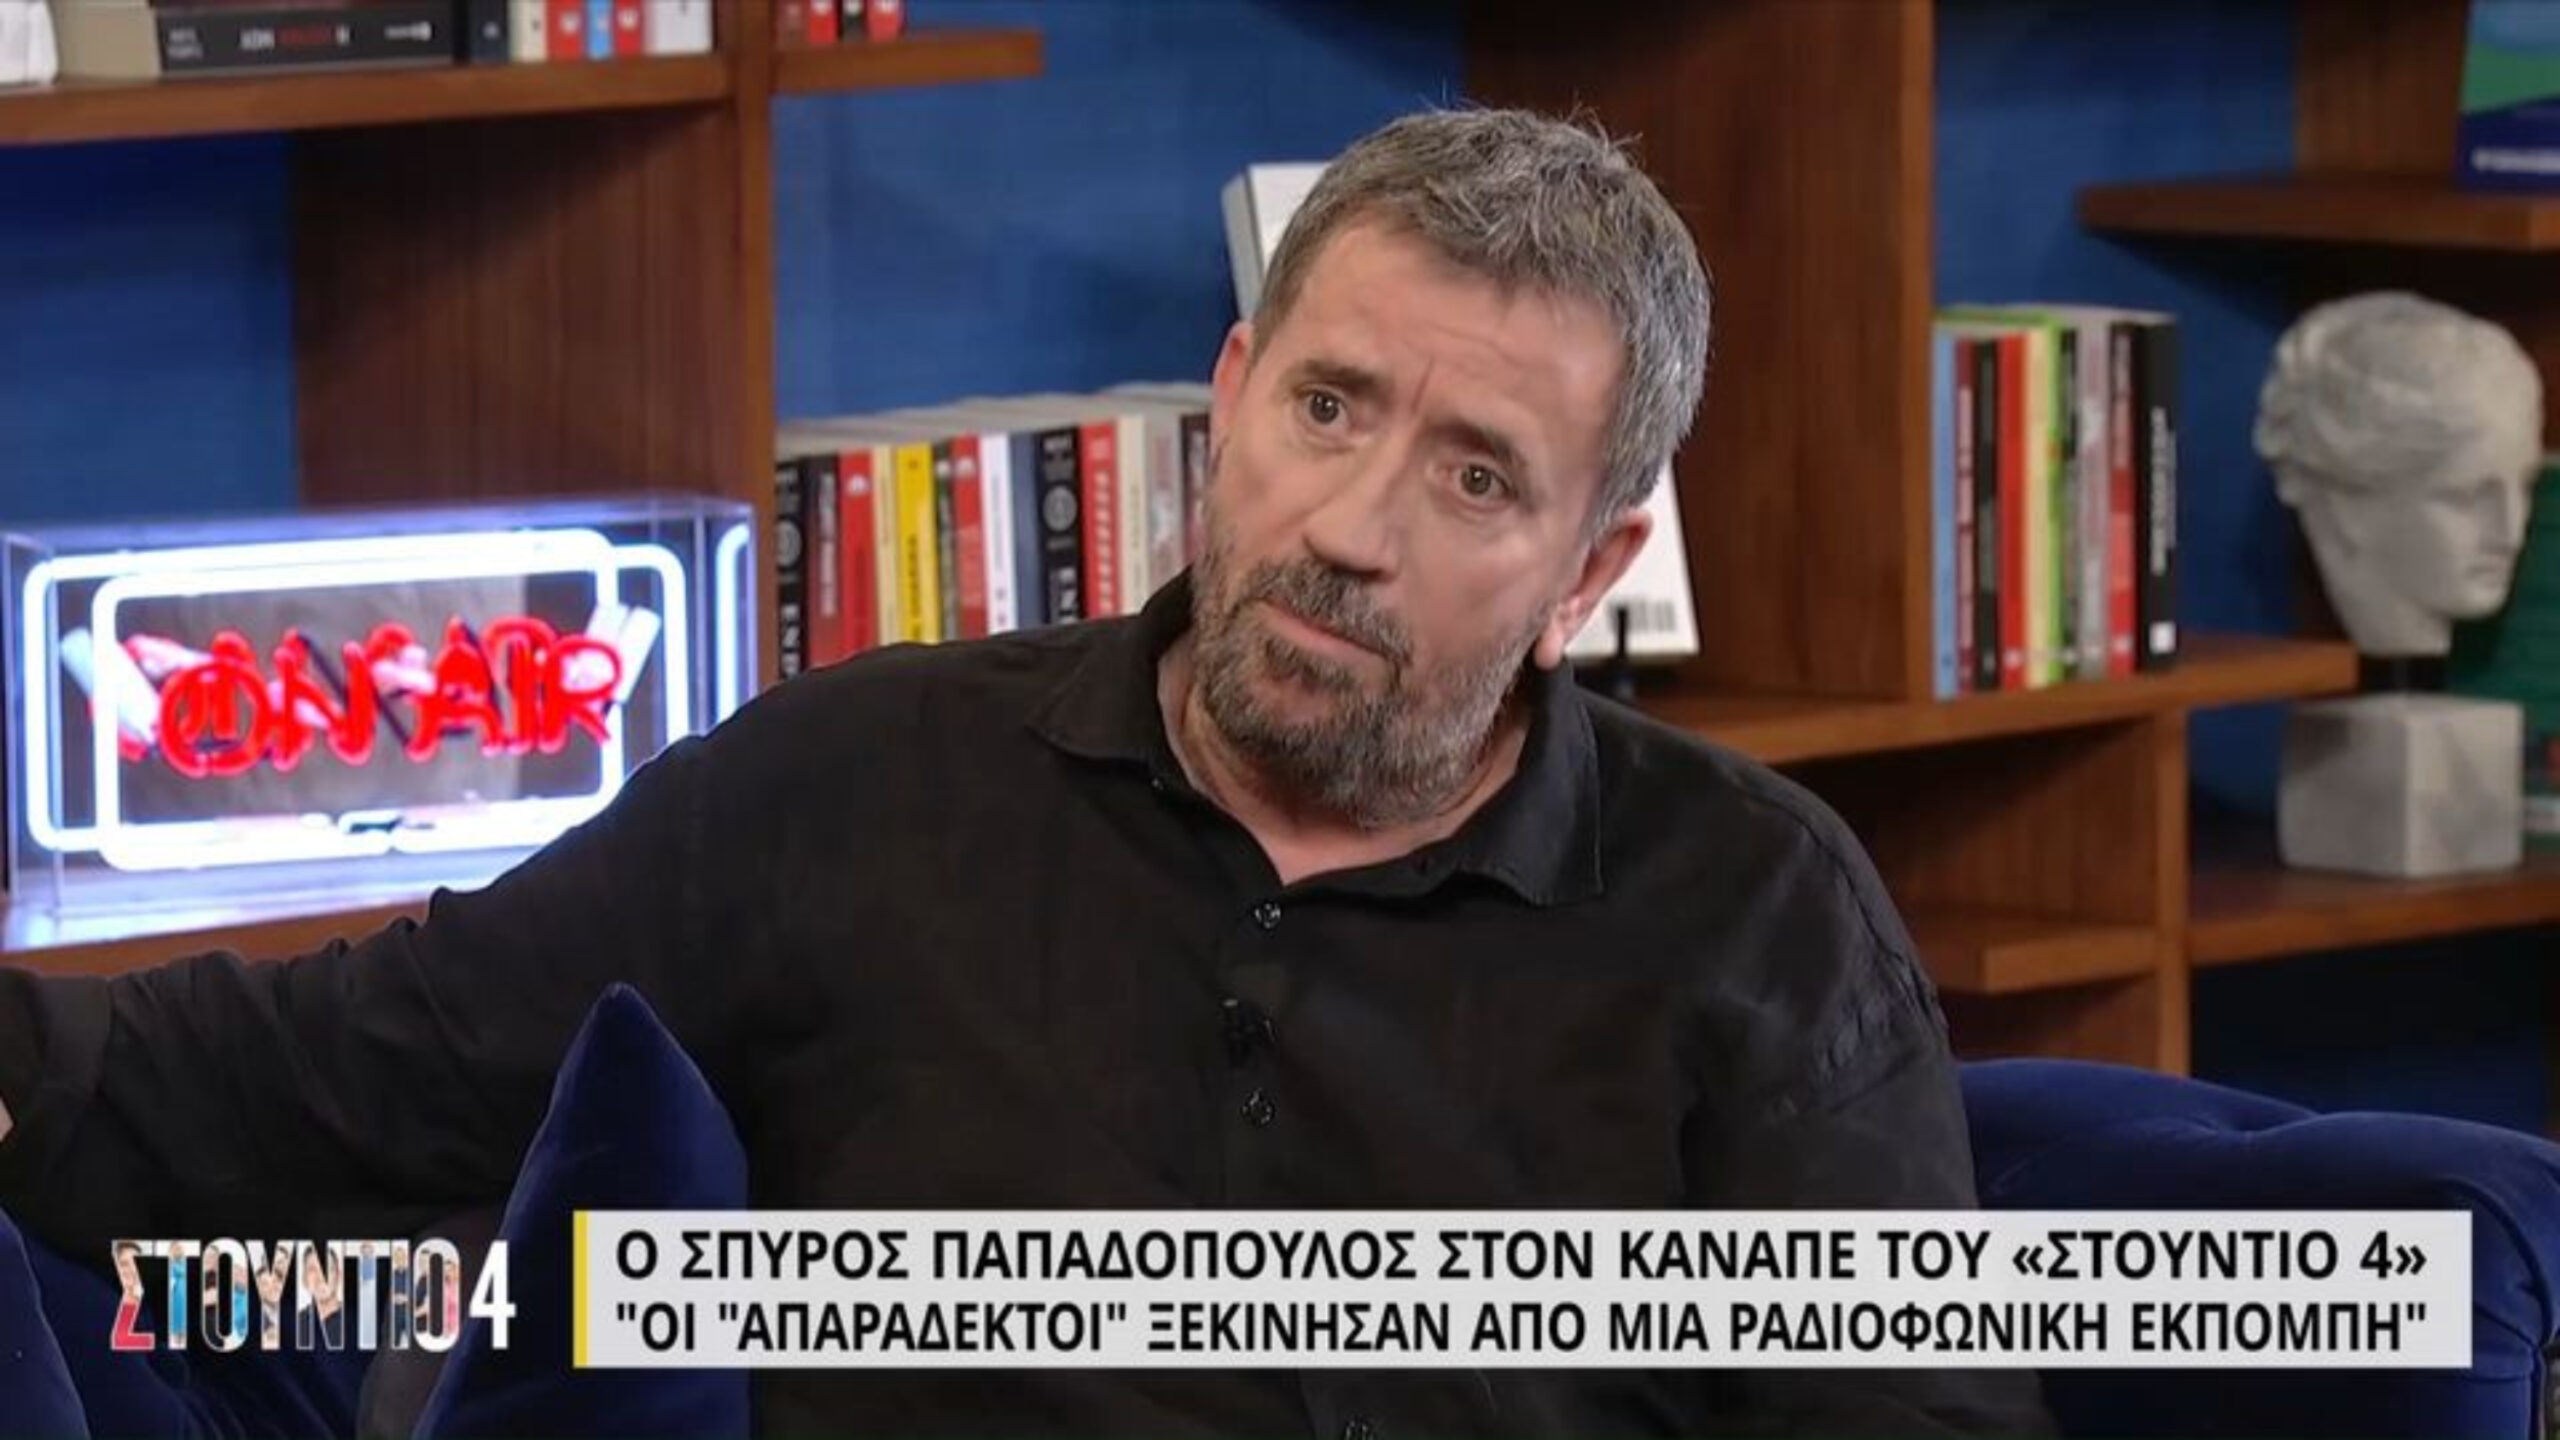 Σπύρος Παπαδόπουλος: «Από ένα σημείο και μετά δεν ήλεγχα το Στην Υγειά μας, είχε ξεφύγει από τα χέρια μου» (VIDEO)